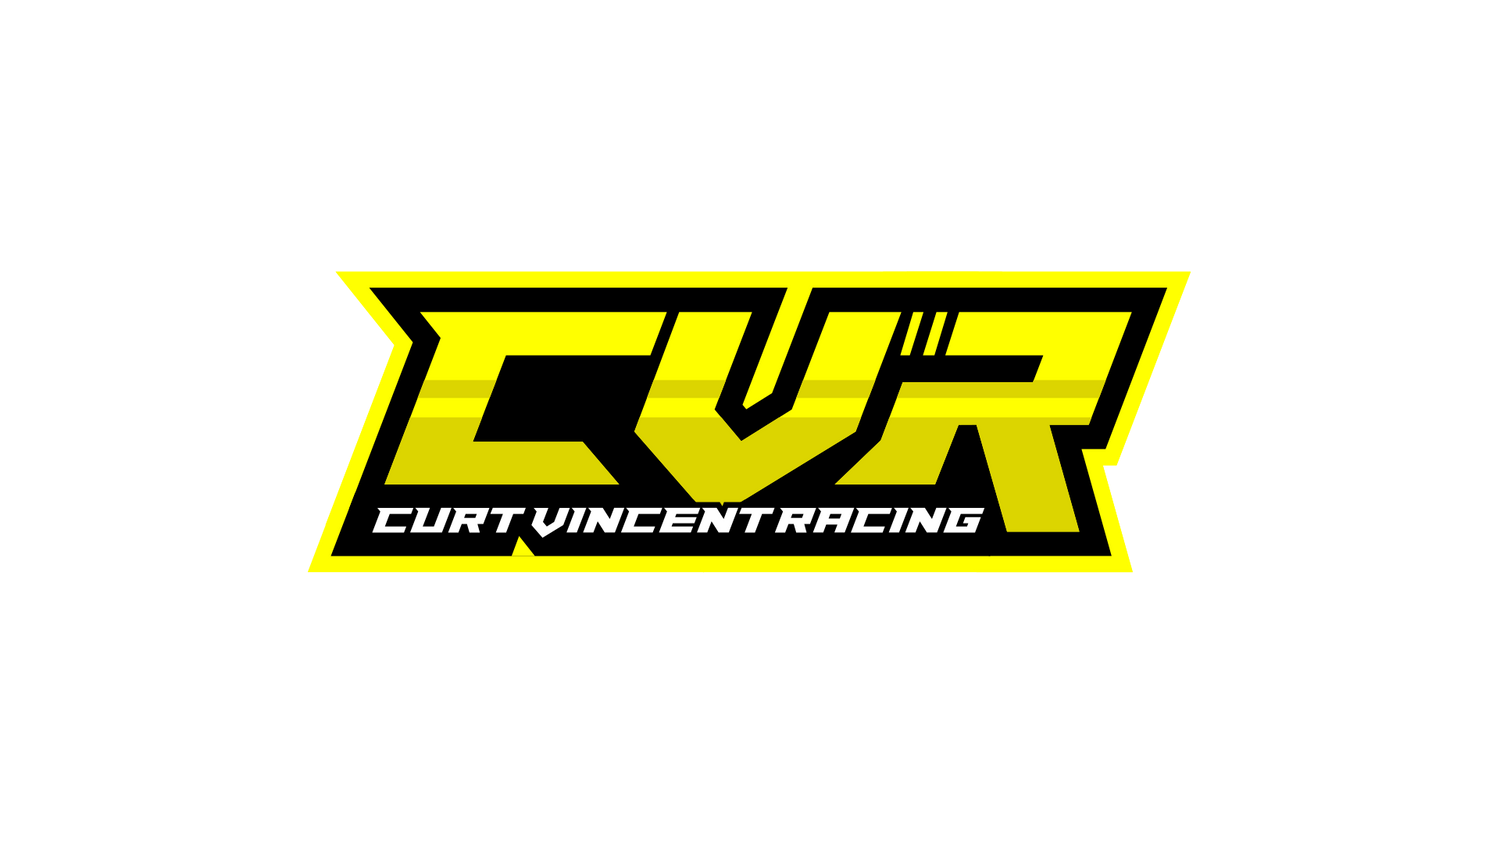 Curt Vincent Racing